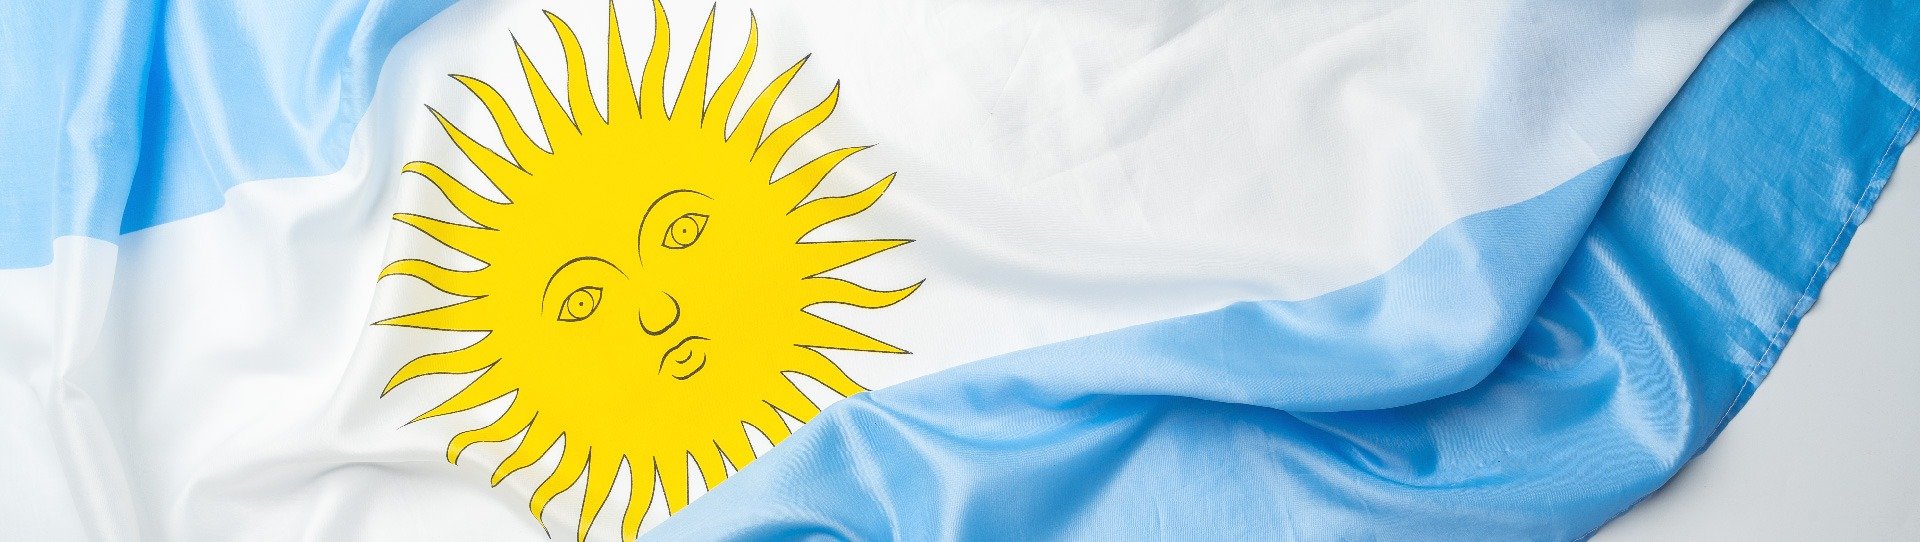 Celebremos el Dia de la Bandera Argentina con el Maridaje Perfecto, Vino y Tradiciones